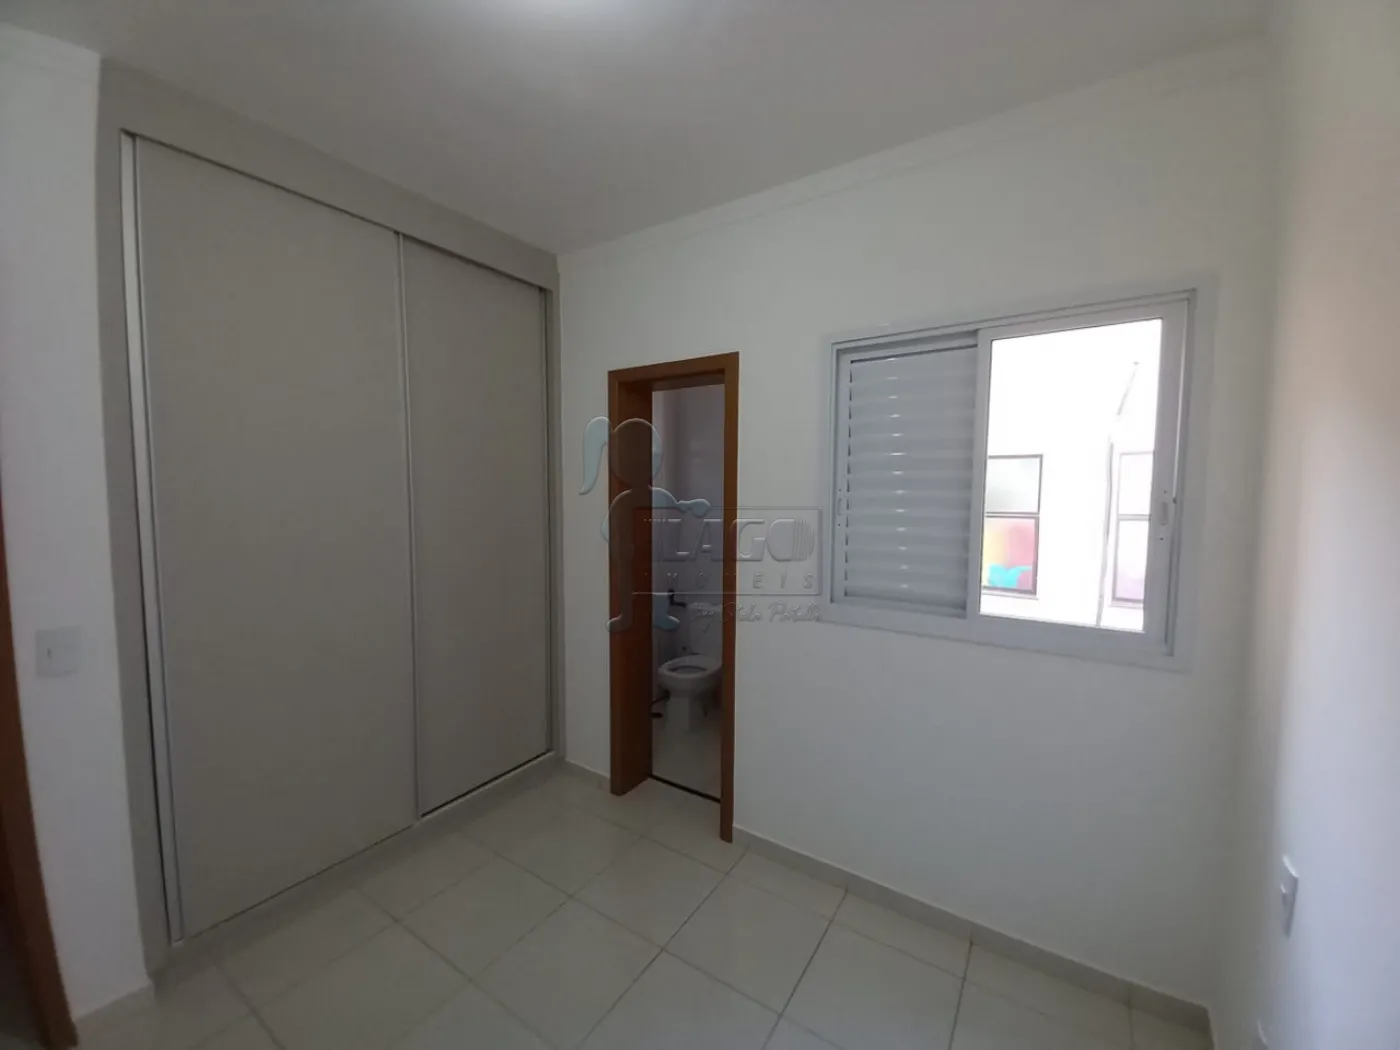 Alugar Apartamentos / Padrão em Ribeirão Preto R$ 2.900,00 - Foto 10